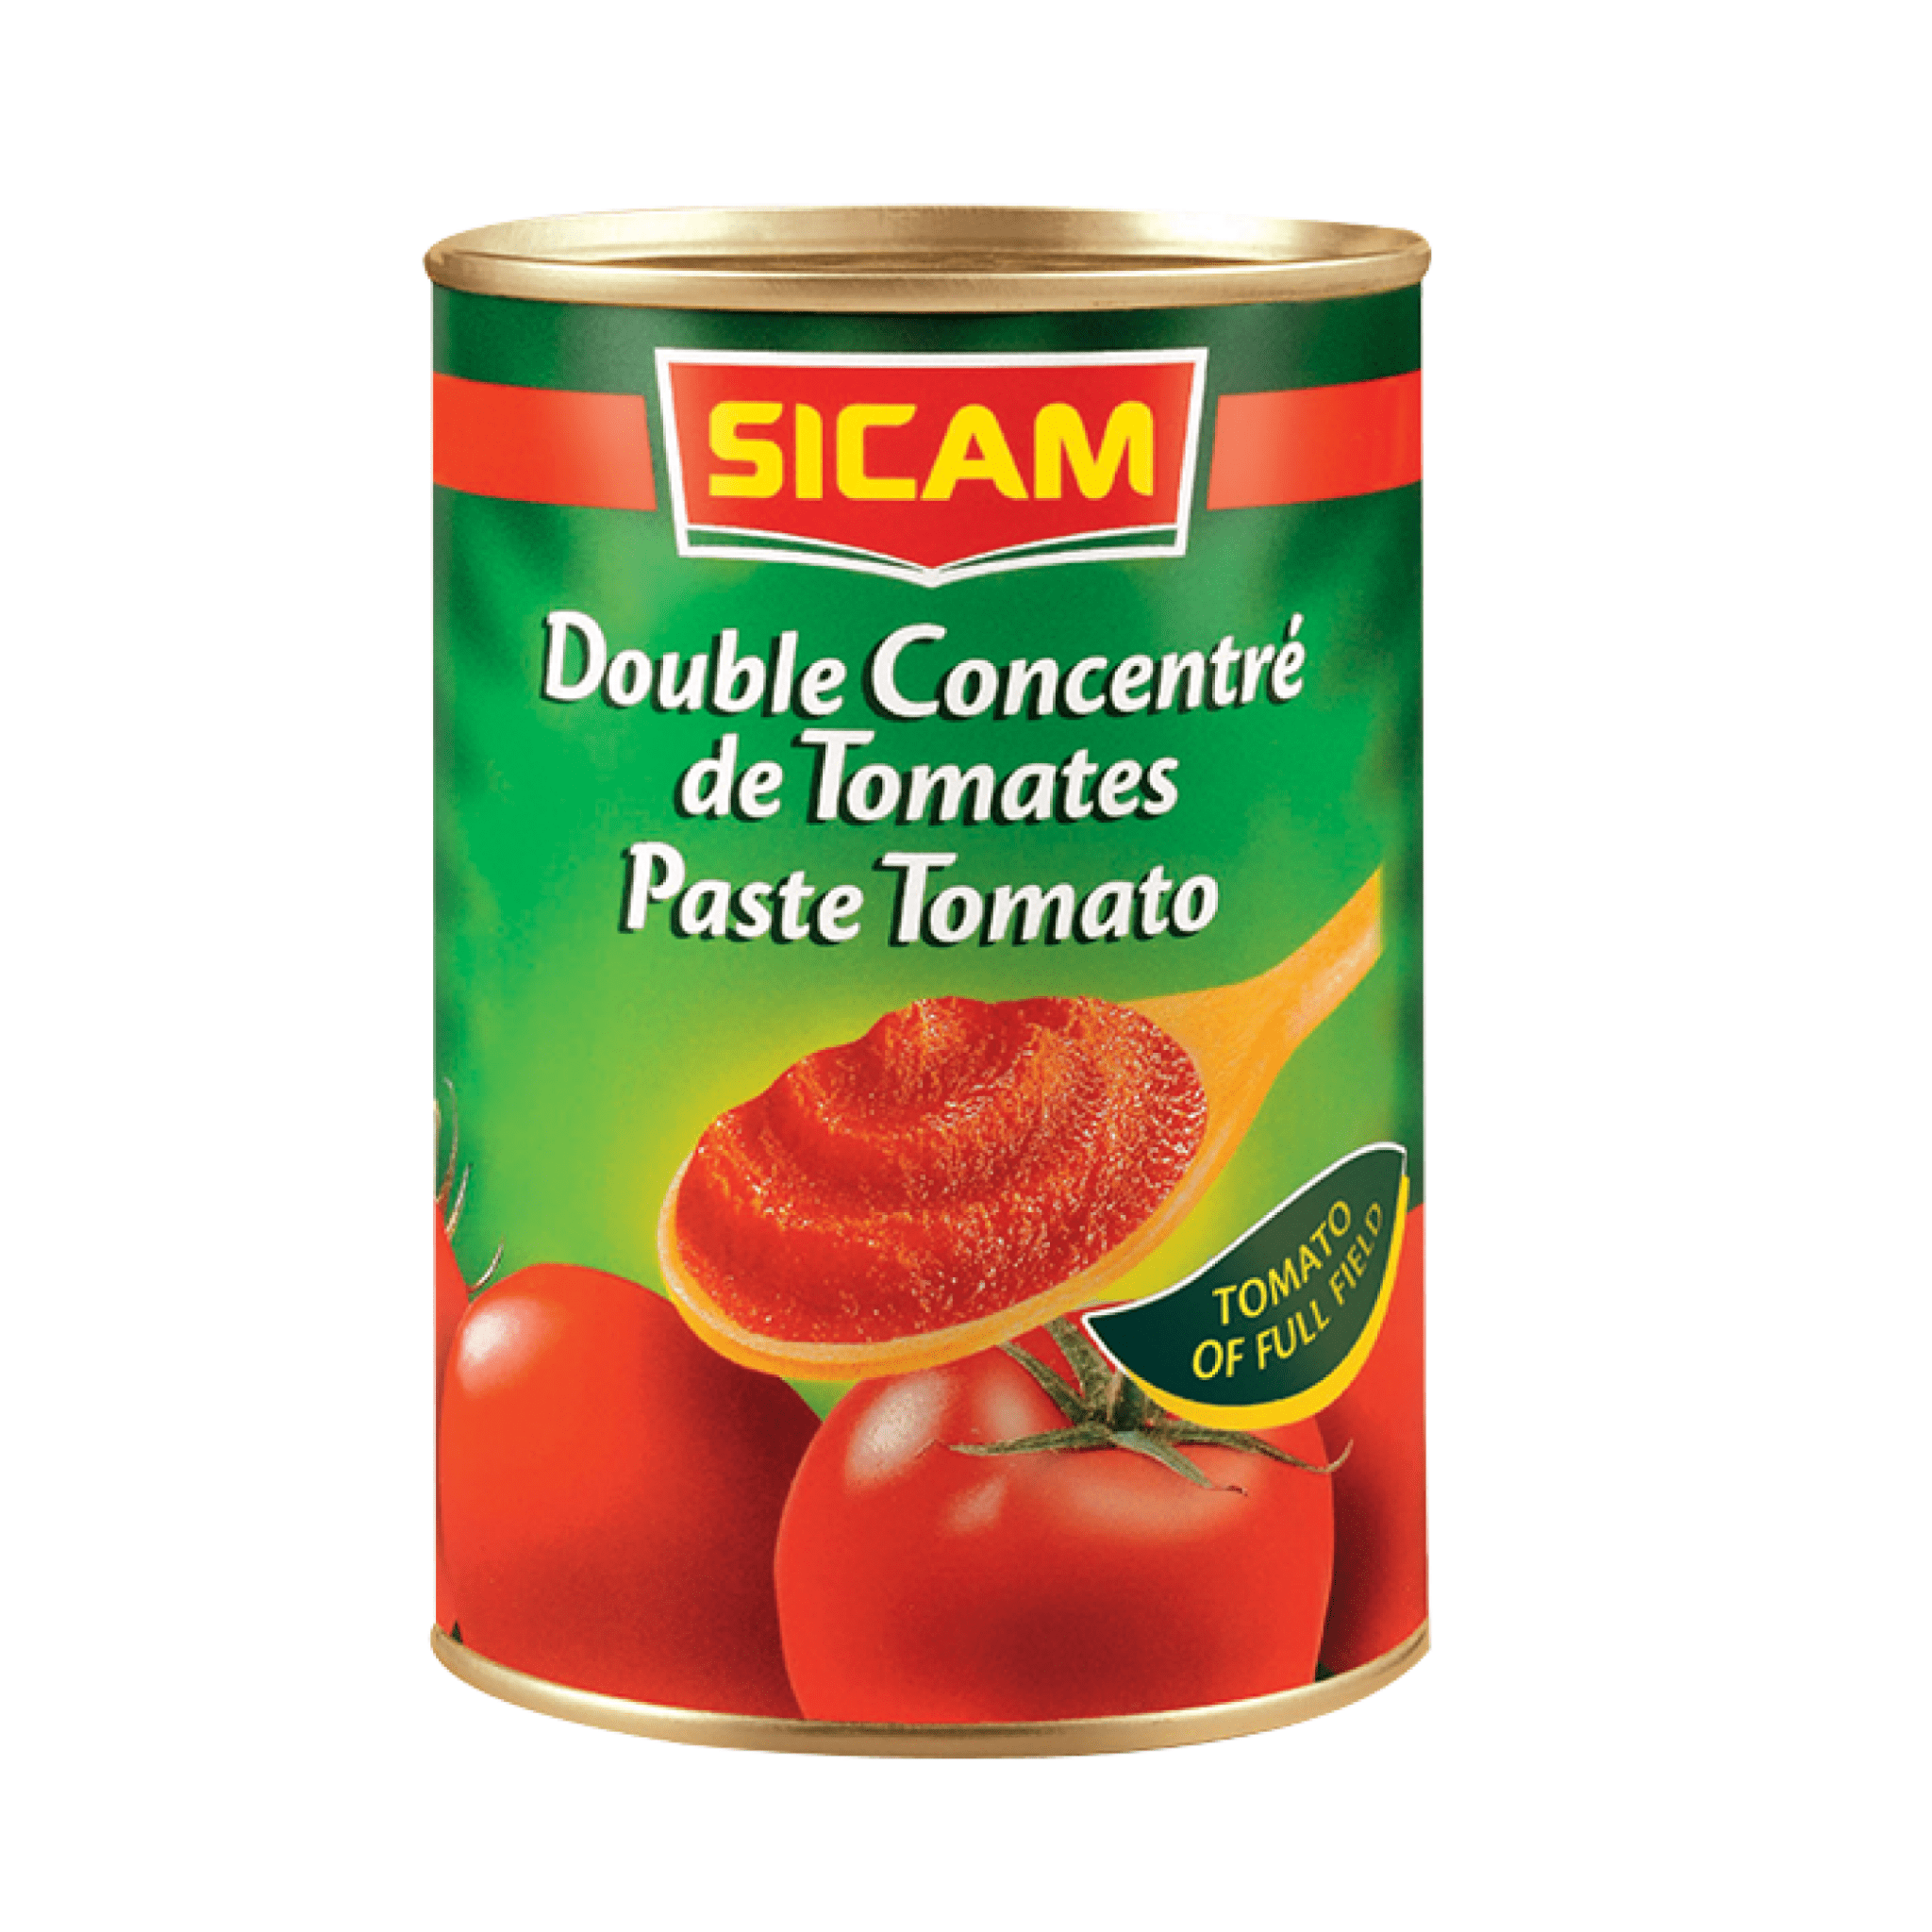 Concentré de tomate